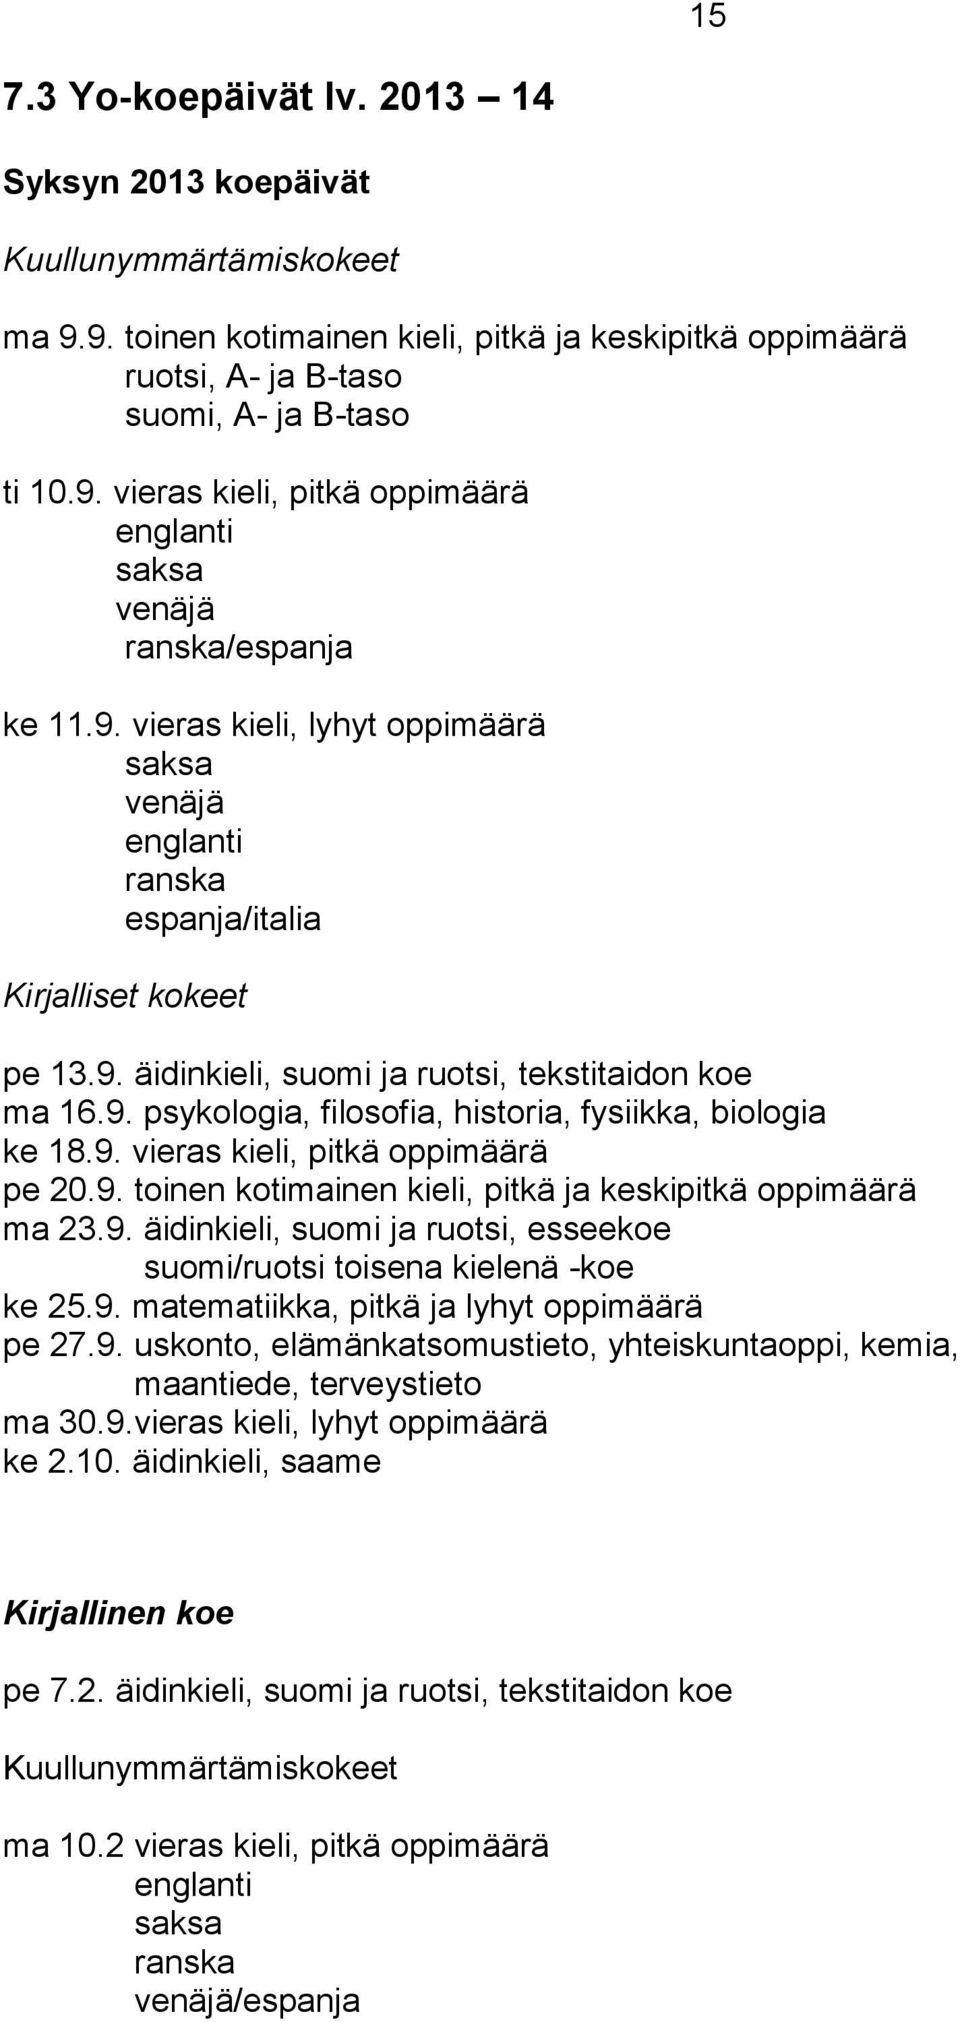 9. vieras kieli, pitkä oppimäärä pe 20.9. toinen kotimainen kieli, pitkä ja keskipitkä oppimäärä ma 23.9. äidinkieli, suomi ja ruotsi, esseekoe suomi/ruotsi toisena kielenä -koe ke 25.9. matematiikka, pitkä ja lyhyt oppimäärä pe 27.